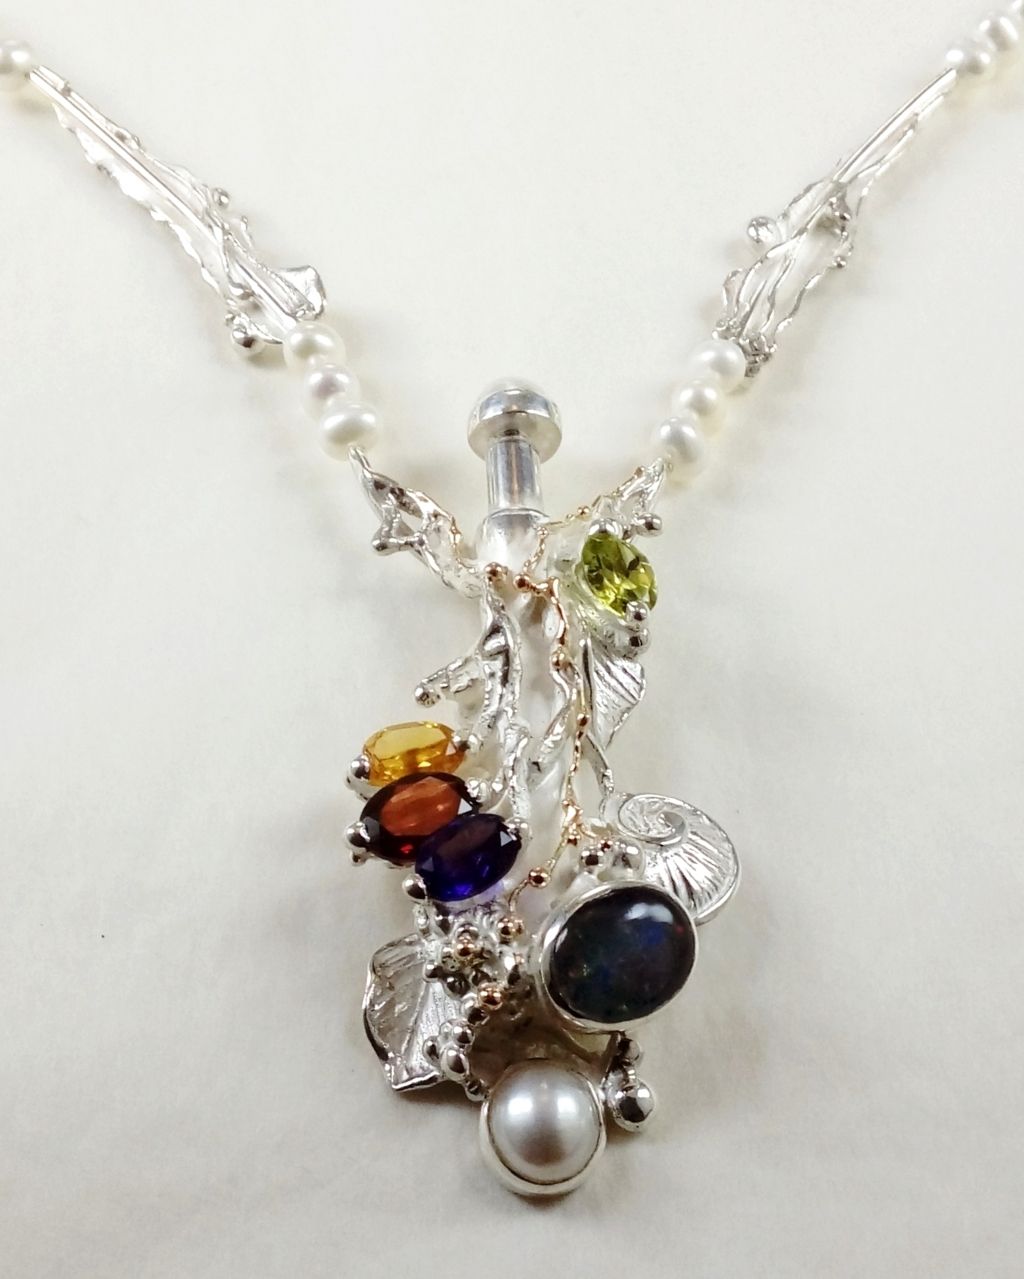 Náhrdelník Gregory Pyra Piro číslo 4041, náhrdelník s peridotem a citrinem, náhrdelník s ametystem a granátem, náhrdelník s perlami a fazetovanými drahokamy, náhrdelník s designem listů a mušlí, náhrdelník s parfémovou lahví, parfémová láhev ze stříbra a zlata, náhrdelník ze zlata a stříbro, šperky prodávané v galeriích, šperky s doručením k vám domů v Hradci, šperky s doručením k vám domů v Mladé, šperky s doručením k vám domů v Liberci